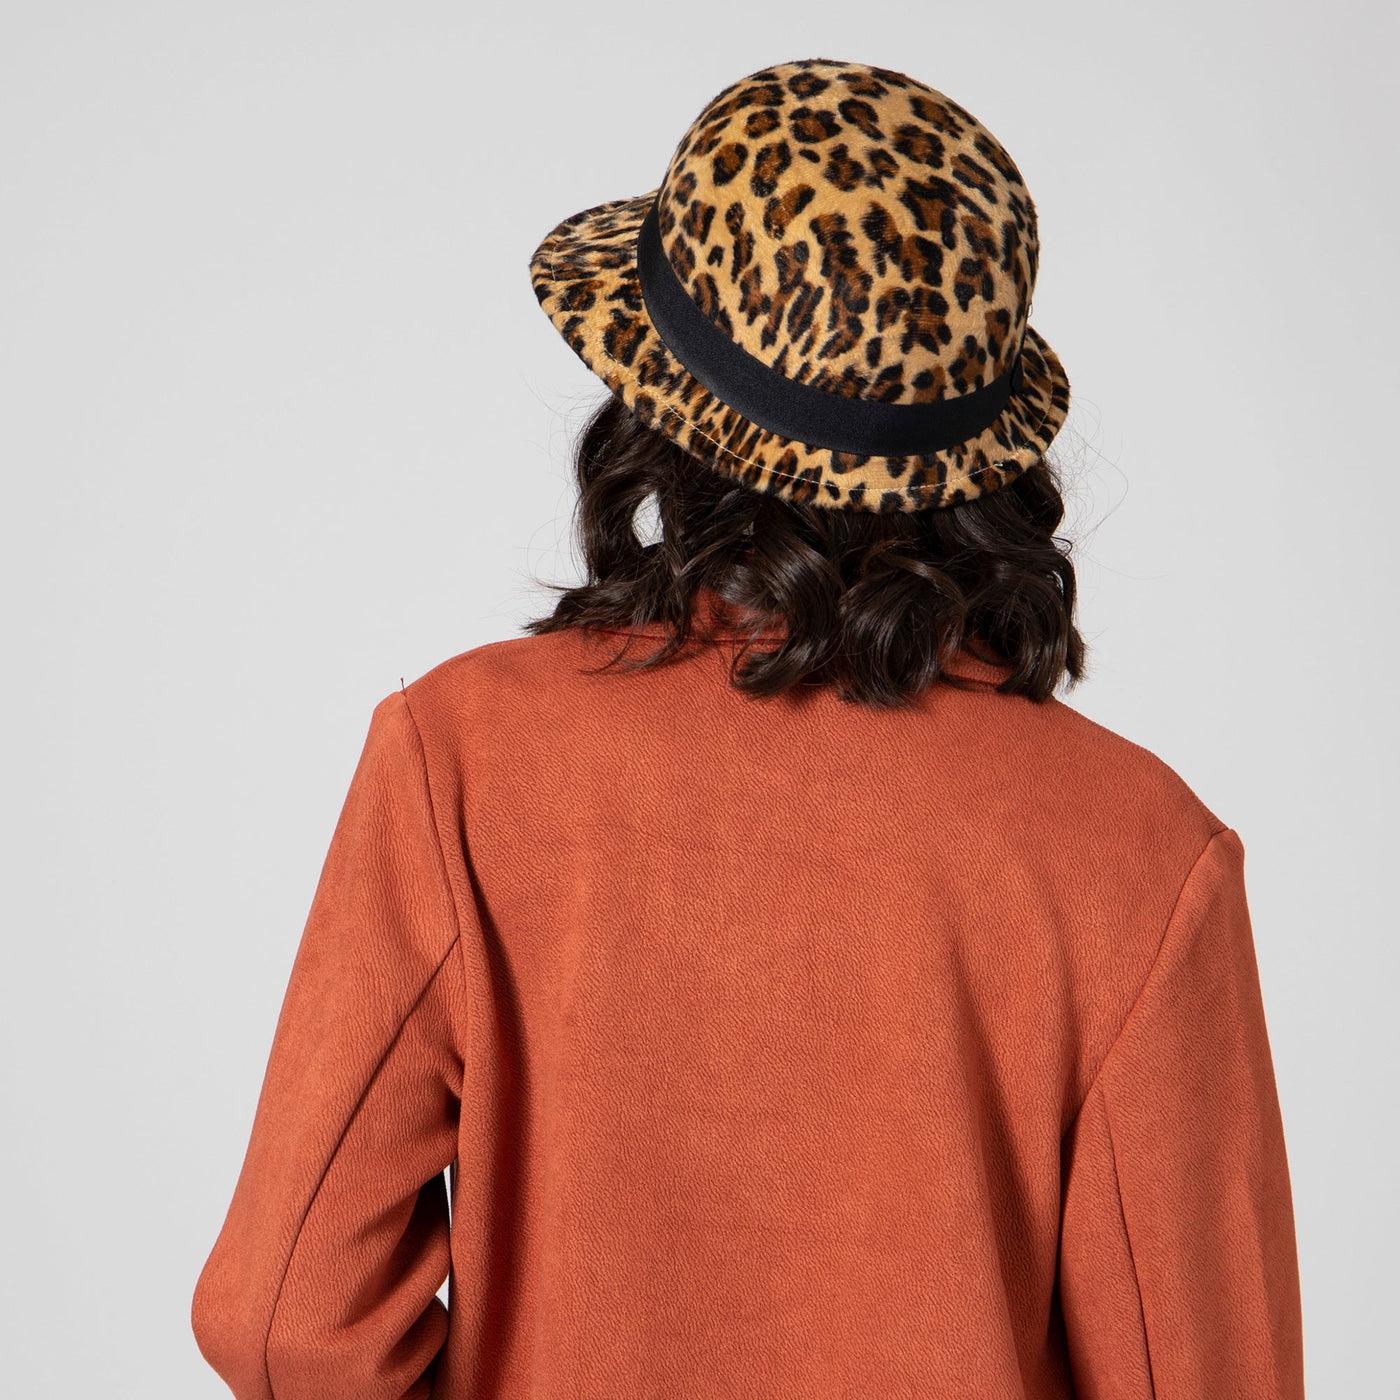 BUCKET - Women's Faux Wool Felt Leopard Cloche With Grosgrain Bow